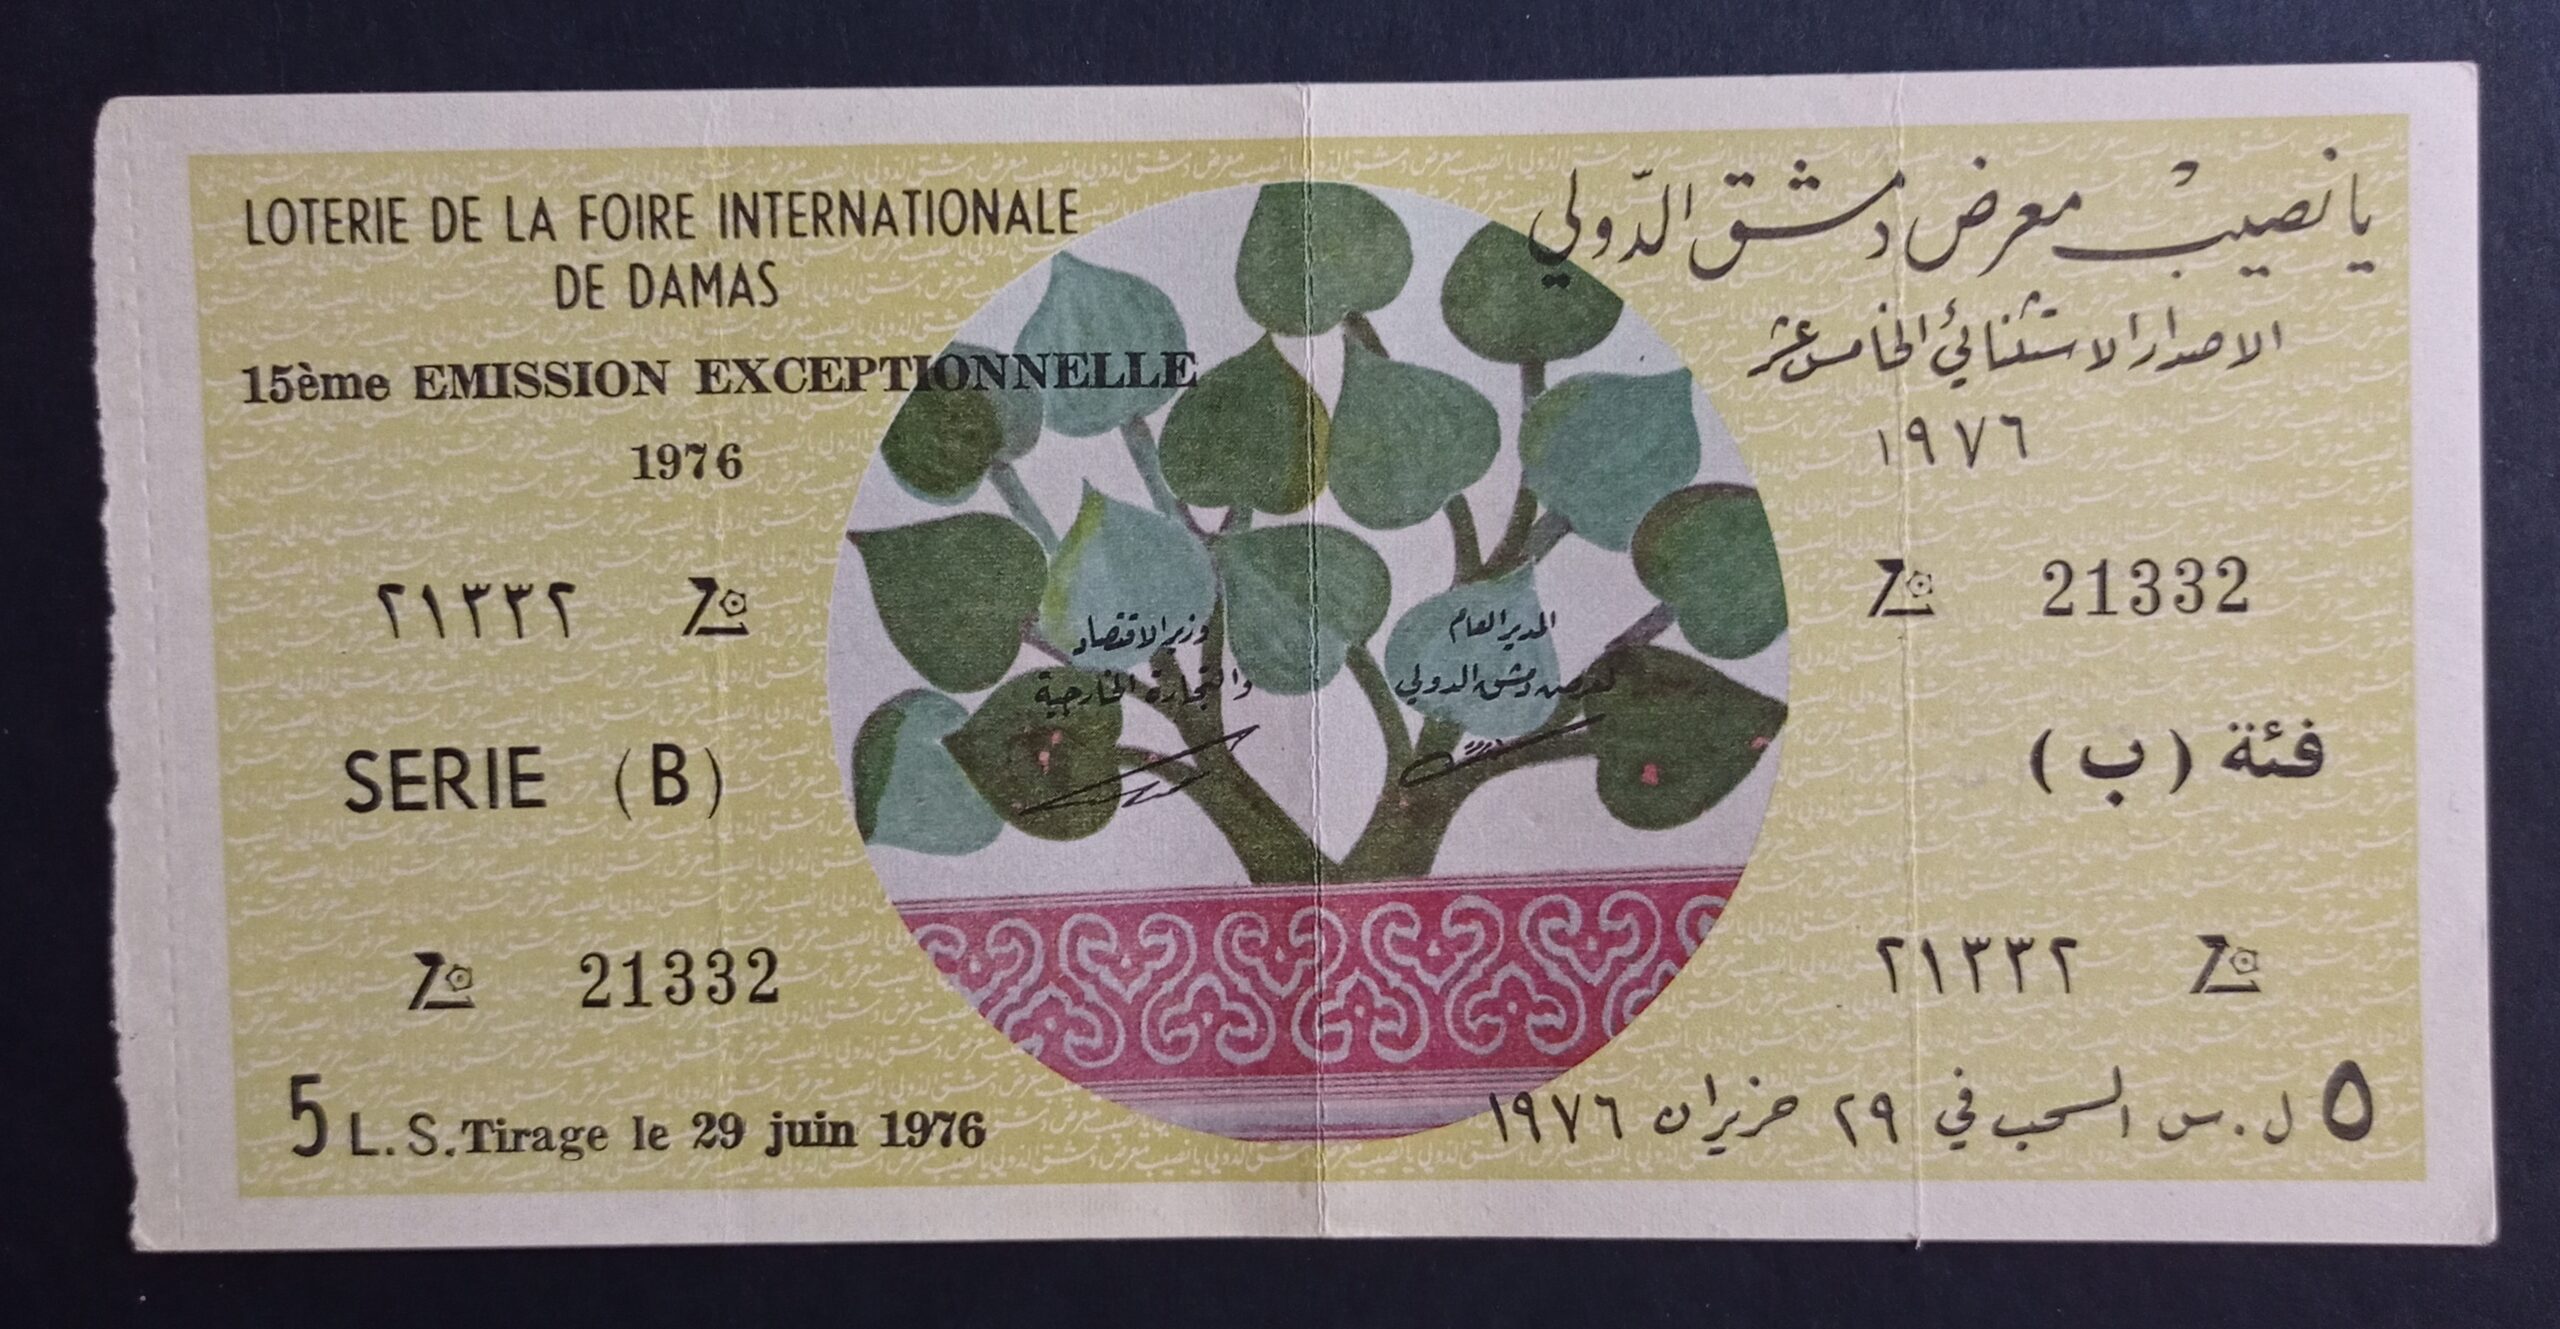 التاريخ السوري المعاصر - يانصيب معرض دمشق الدولي - الاصدار الاستثنائي الخامس عشر - فئة (ب) عام 1976